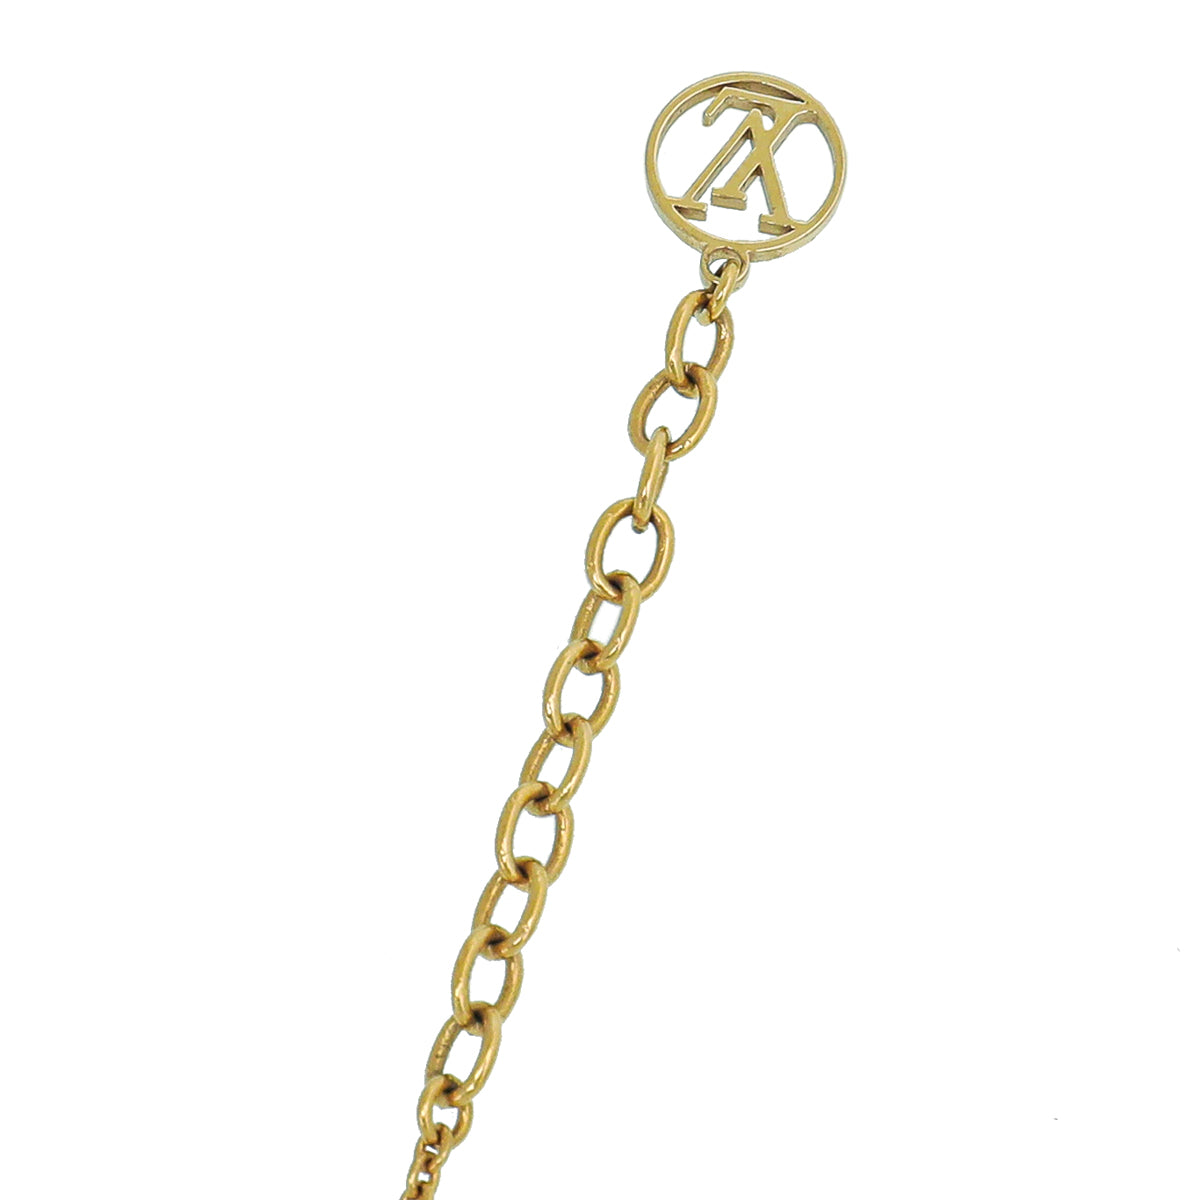 Louis Vuitton LV & Me Letter 'L' Bracelet - Gold-Tone Metal Link